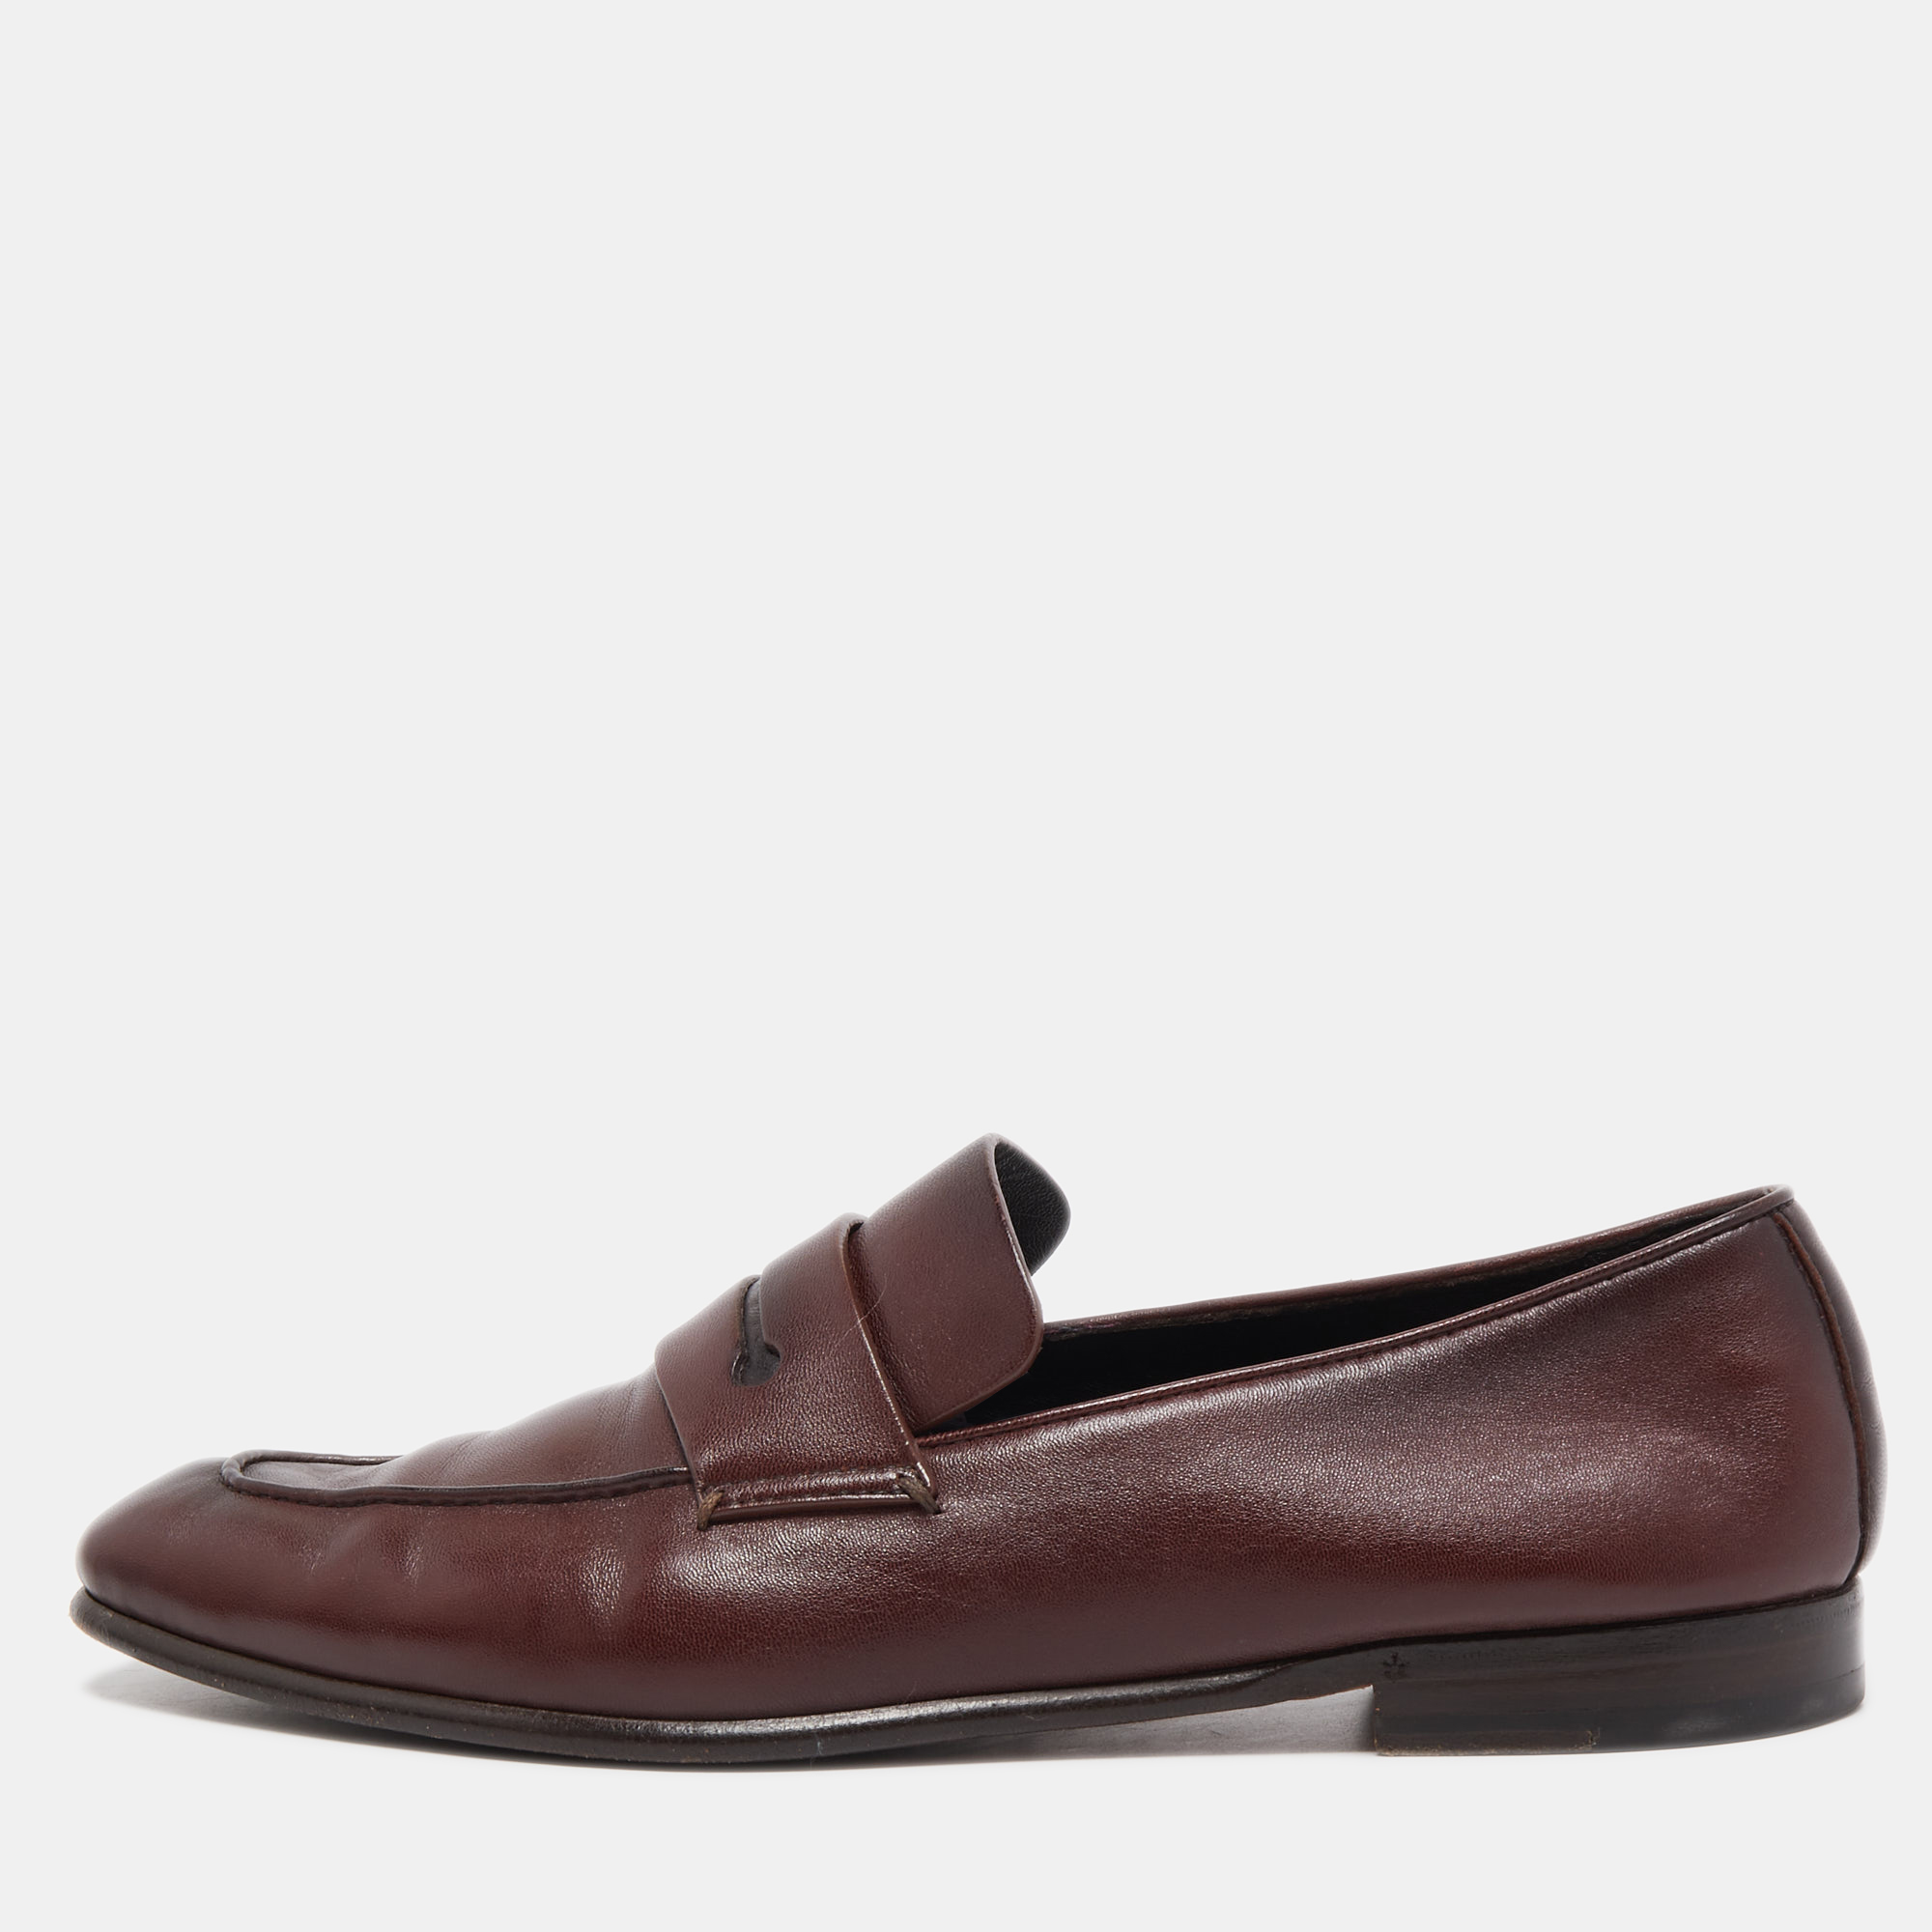 zegna shoes for men